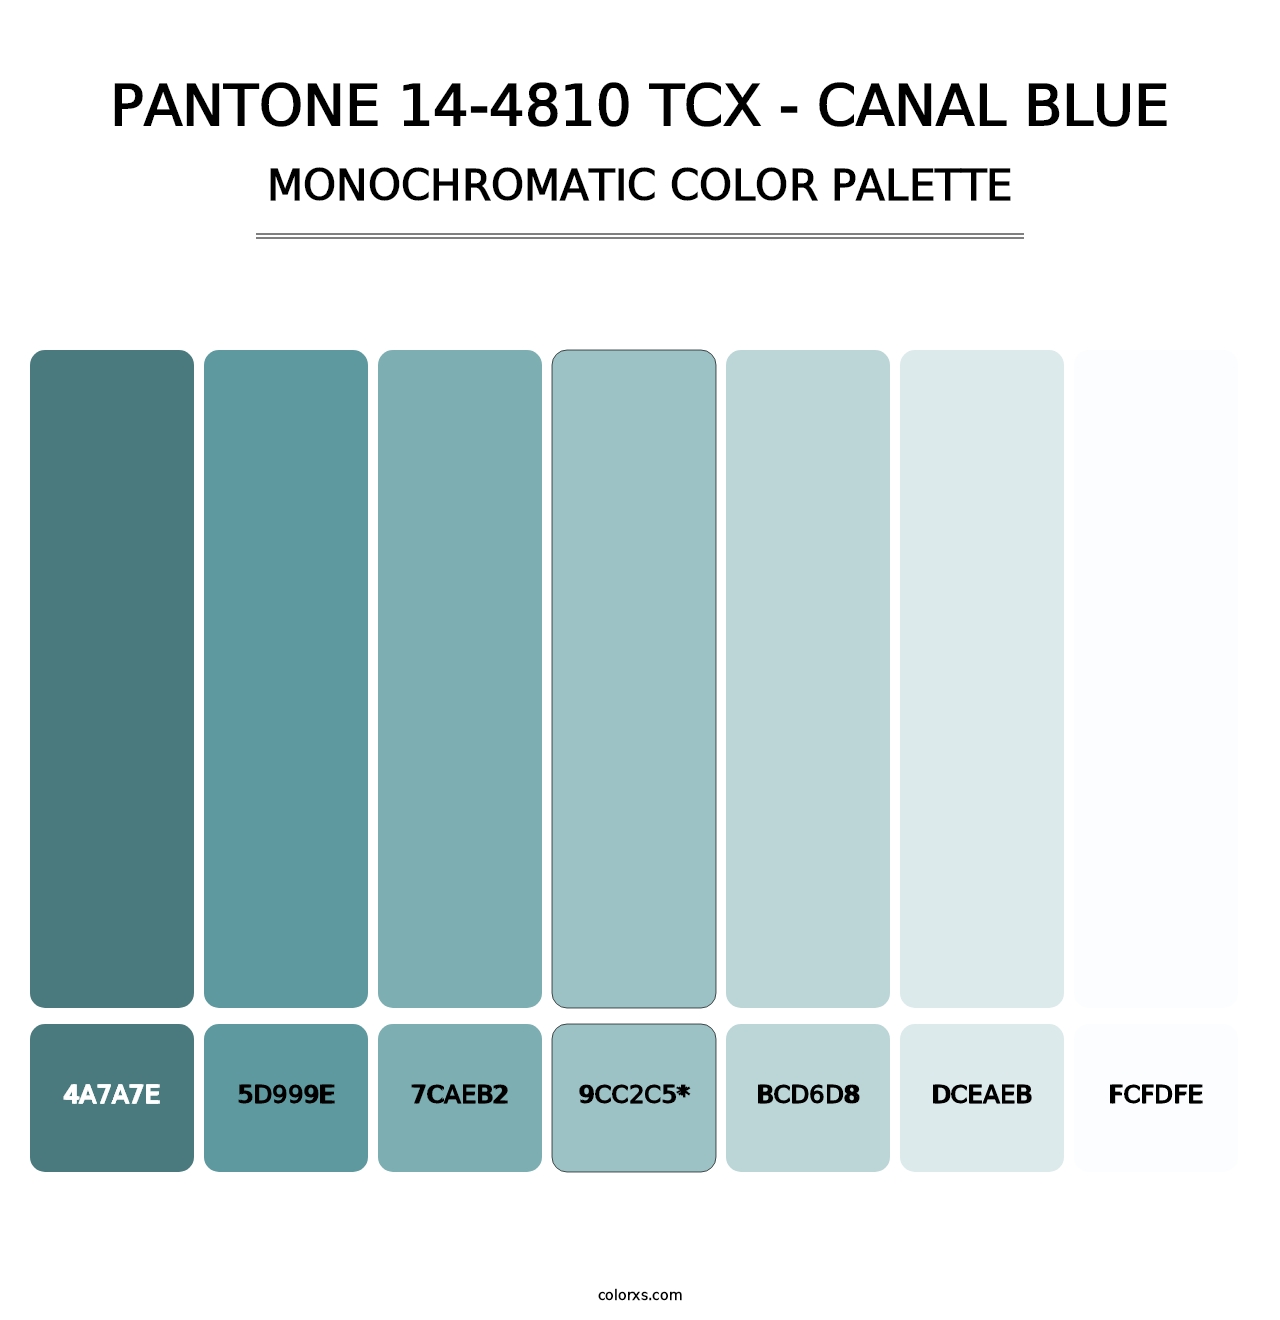 PANTONE 14-4810 TCX - Canal Blue - Monochromatic Color Palette